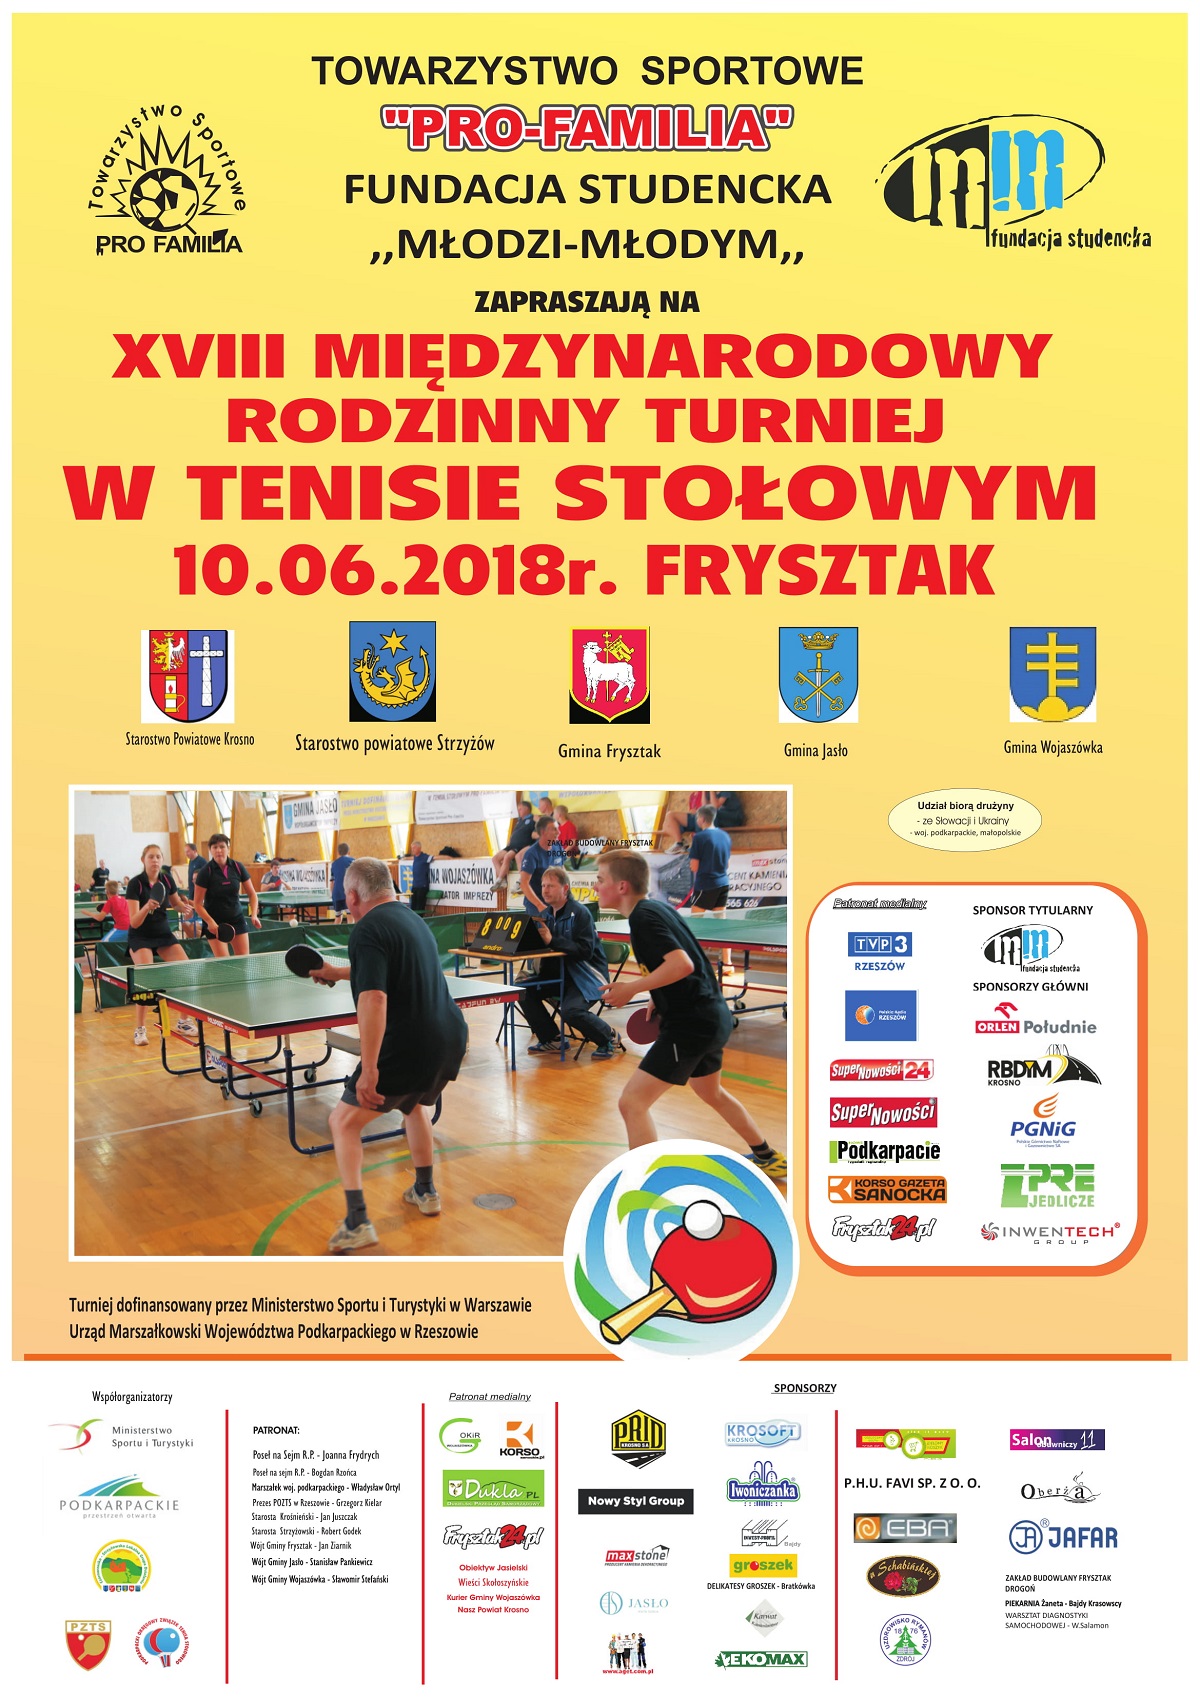  XVIII Międzynarodowy Rodzinny Turniej w Tenisie Stołowym PRO- FAMILIA CUP 2018 - Zdjęcie główne